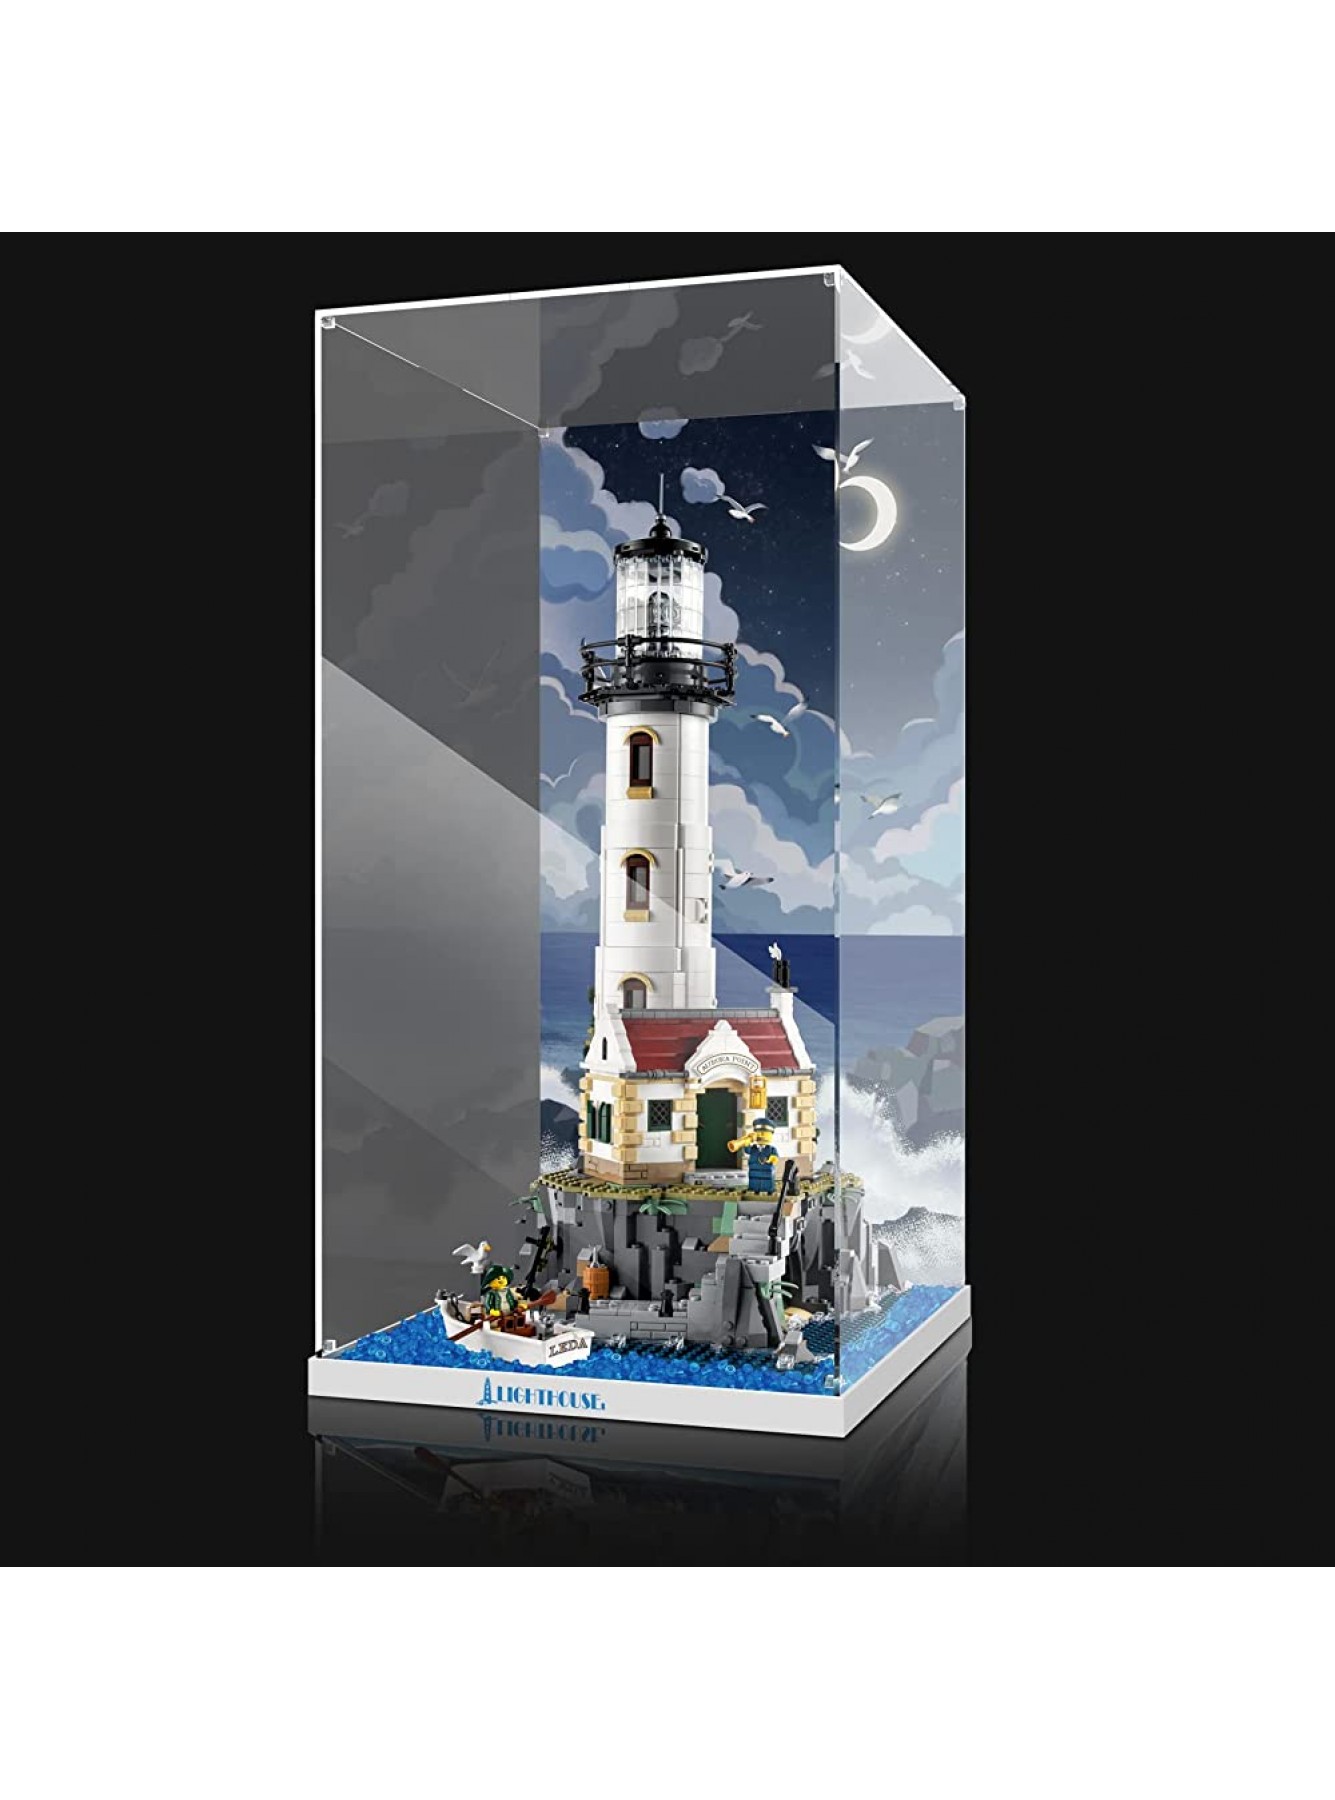 cooldac Acryl Vitrine Box für Lego Motorisierter Leuchtturm 21335 staubdicht Transparent Clear Display Box Vitrine Das Modell Nicht enthalten - B0BLH1H7WK